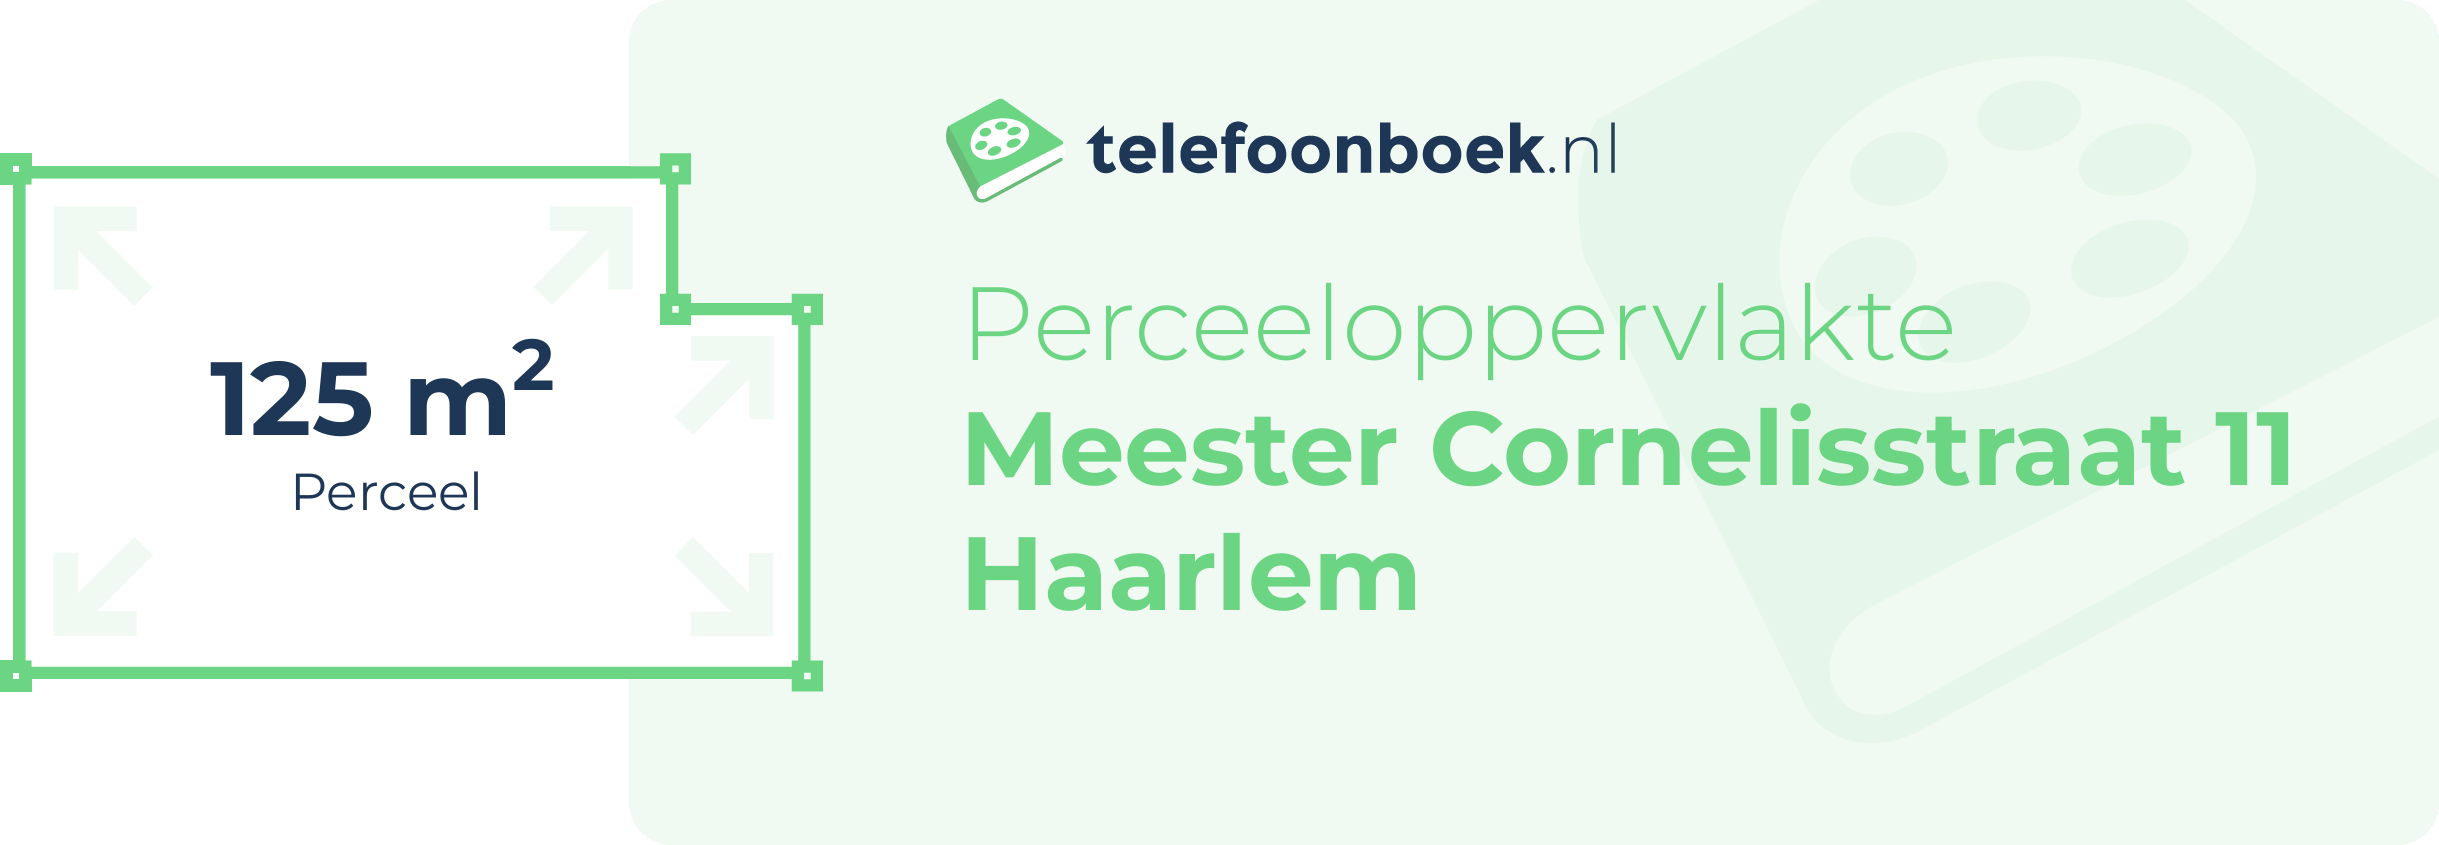 Perceeloppervlakte Meester Cornelisstraat 11 Haarlem